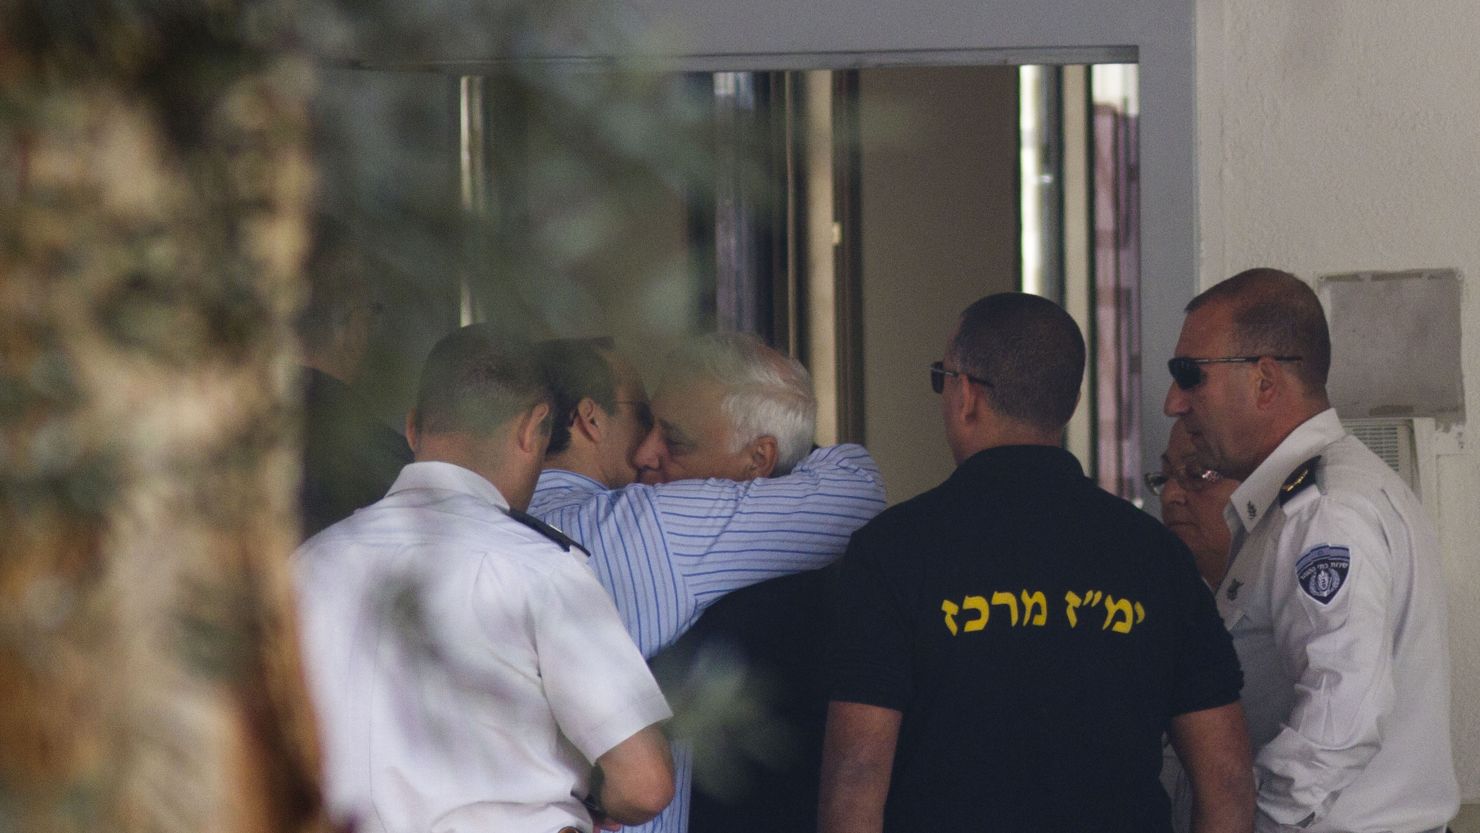 Former Israeli President Moshe Katsav hugs his son before starting a 7 year prison sentence for rape and sexual offenses.